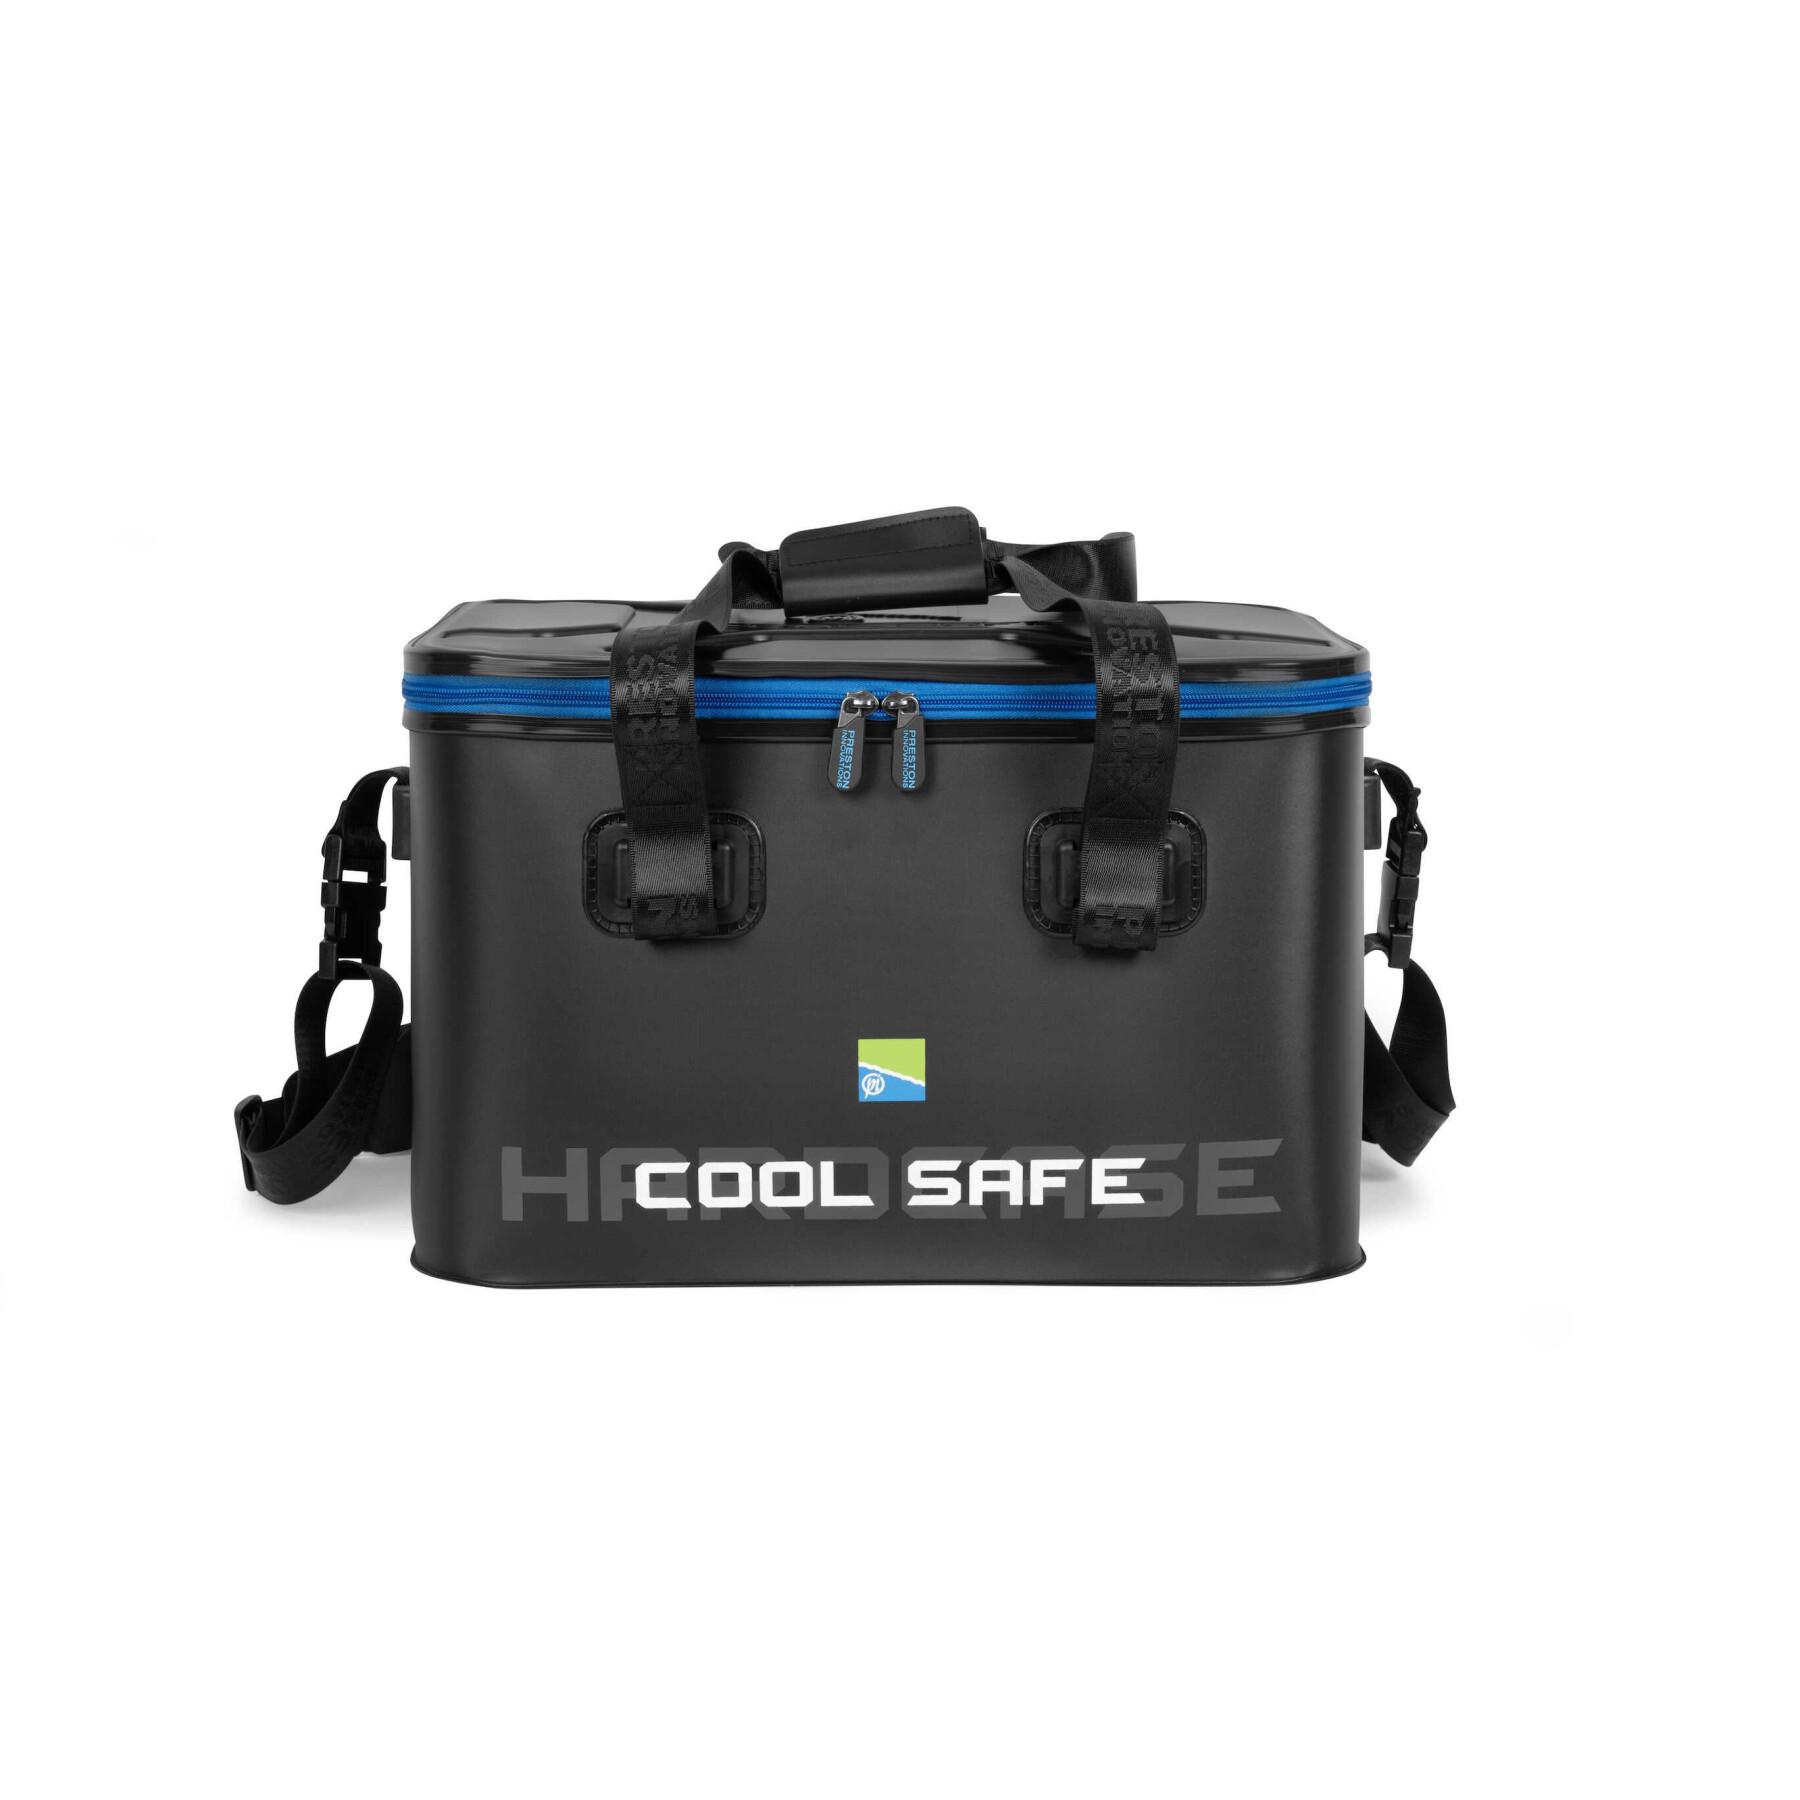 Cooler bag Preston Hardcase Cool Safe